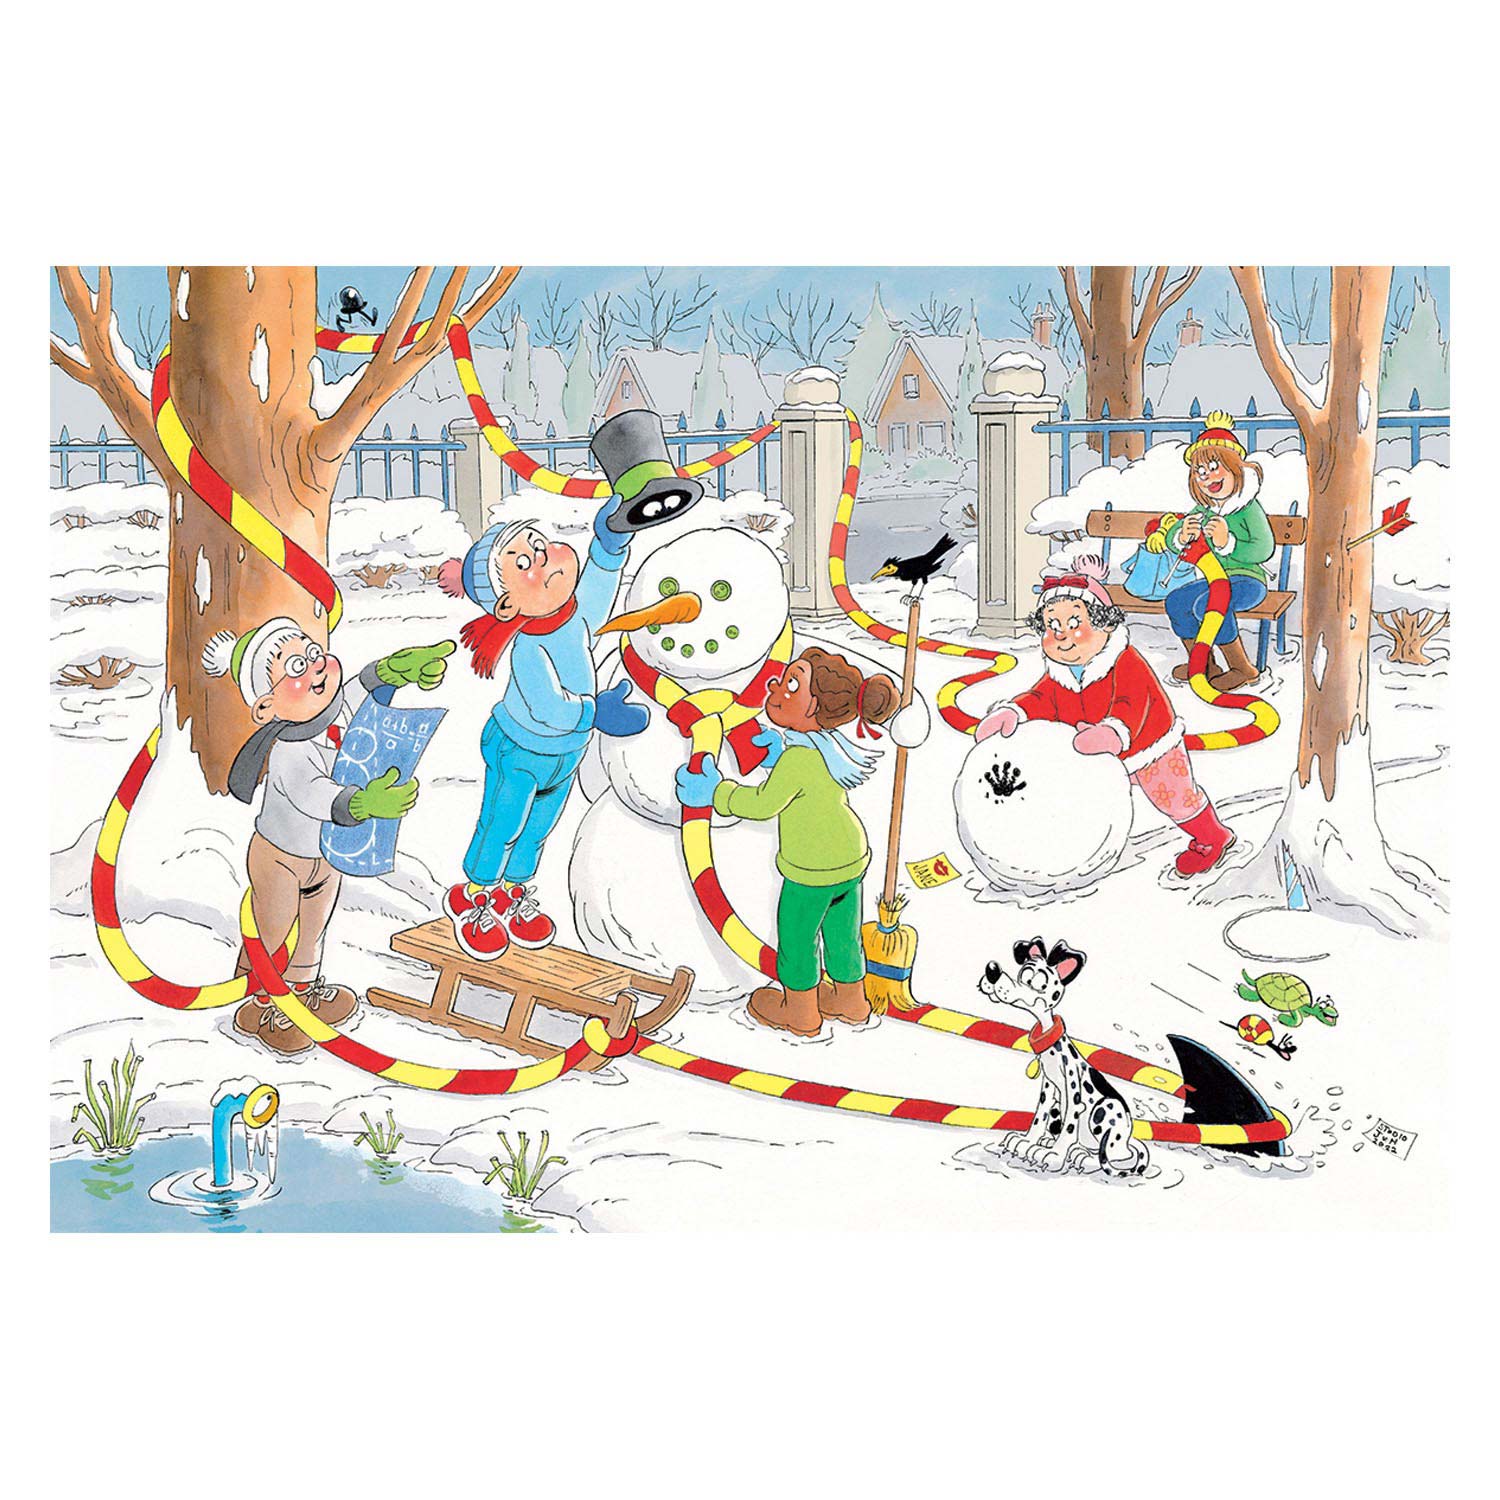 Jan van Haasteren Puzzle Junior - Bonhomme de neige, 150 pcs.